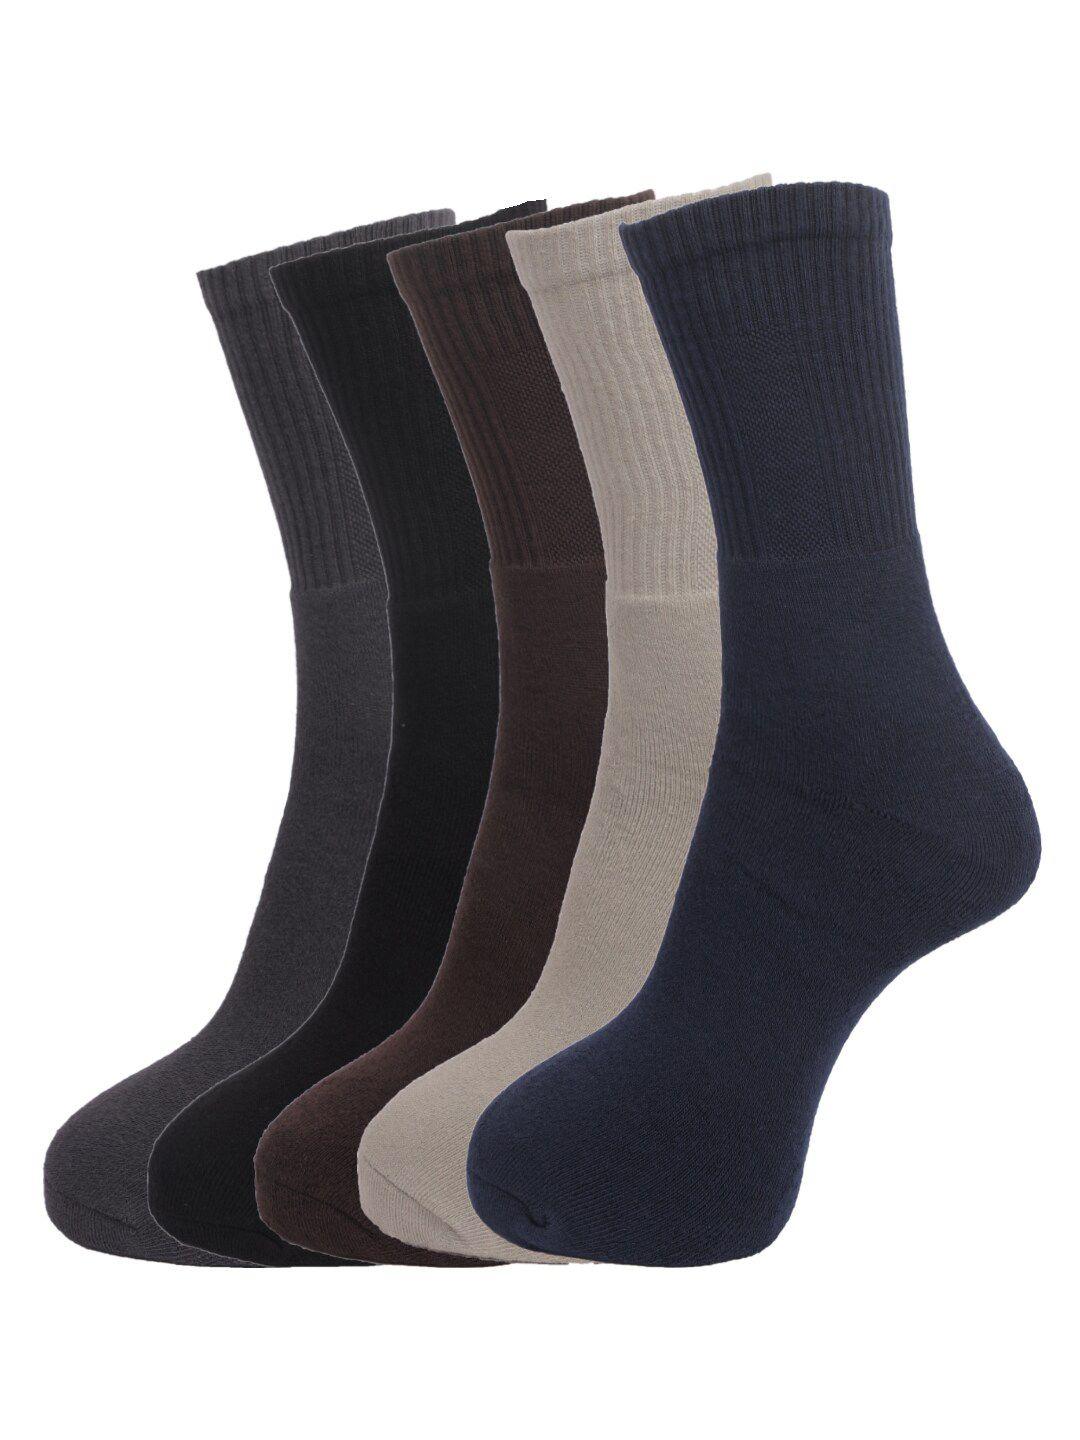 dollar socks men pack of 5 assorted cotton above ankle-length socks